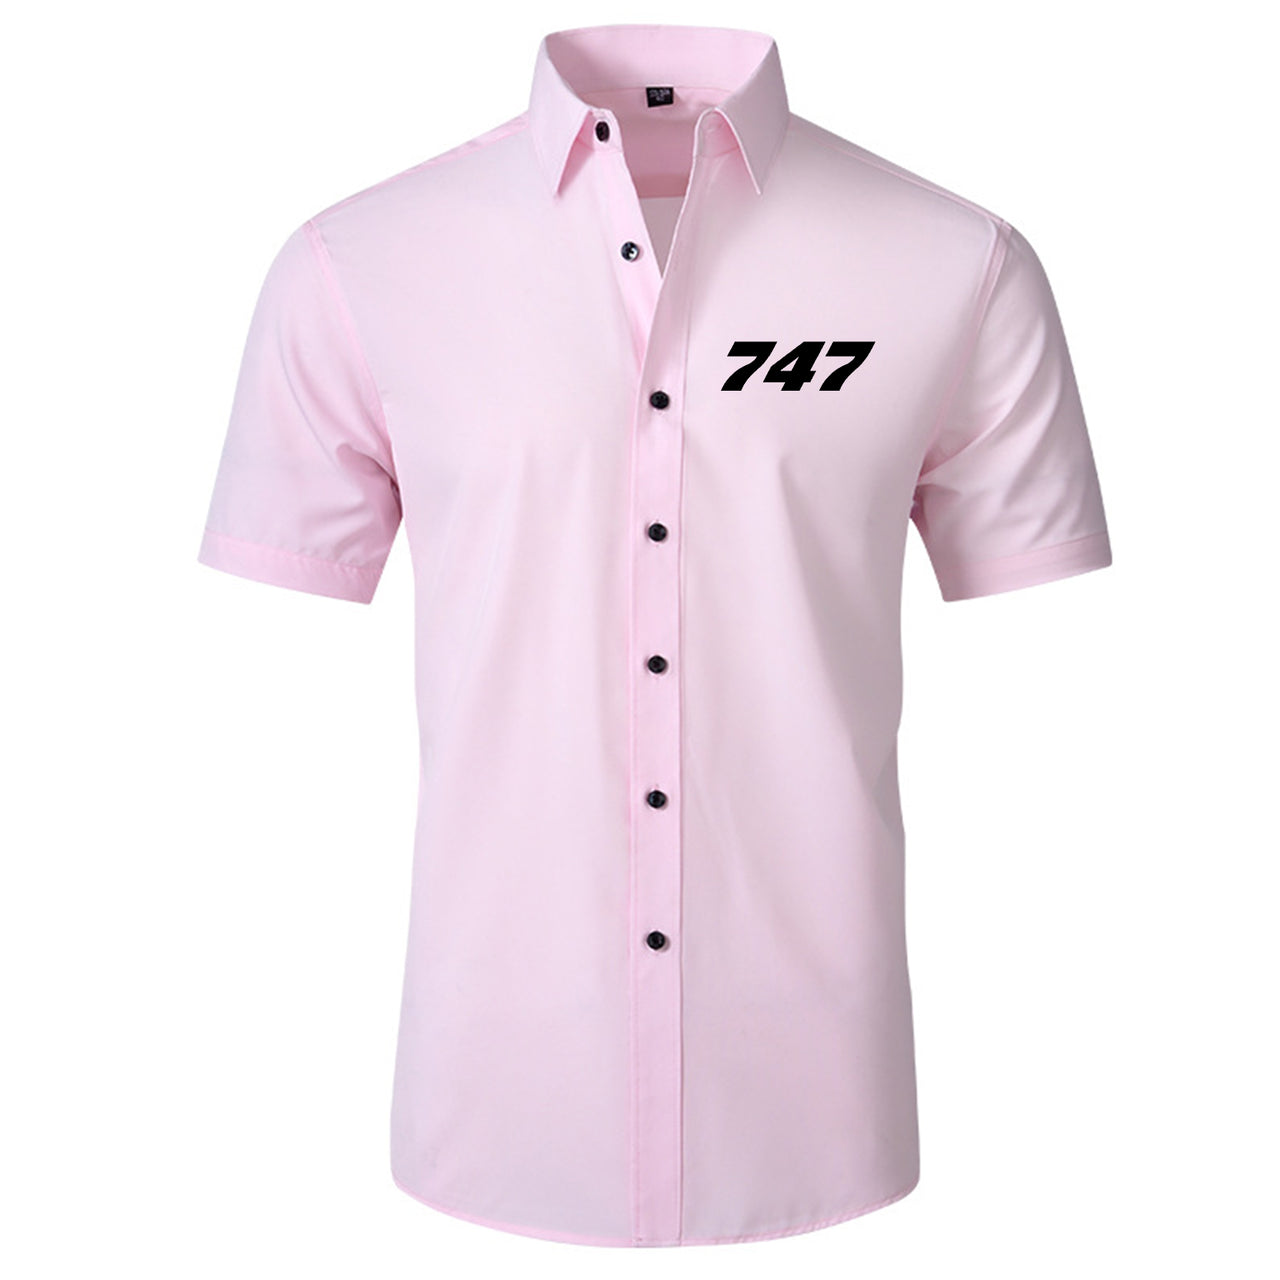 747 Flat Text Designed Short Sleeve Shirts